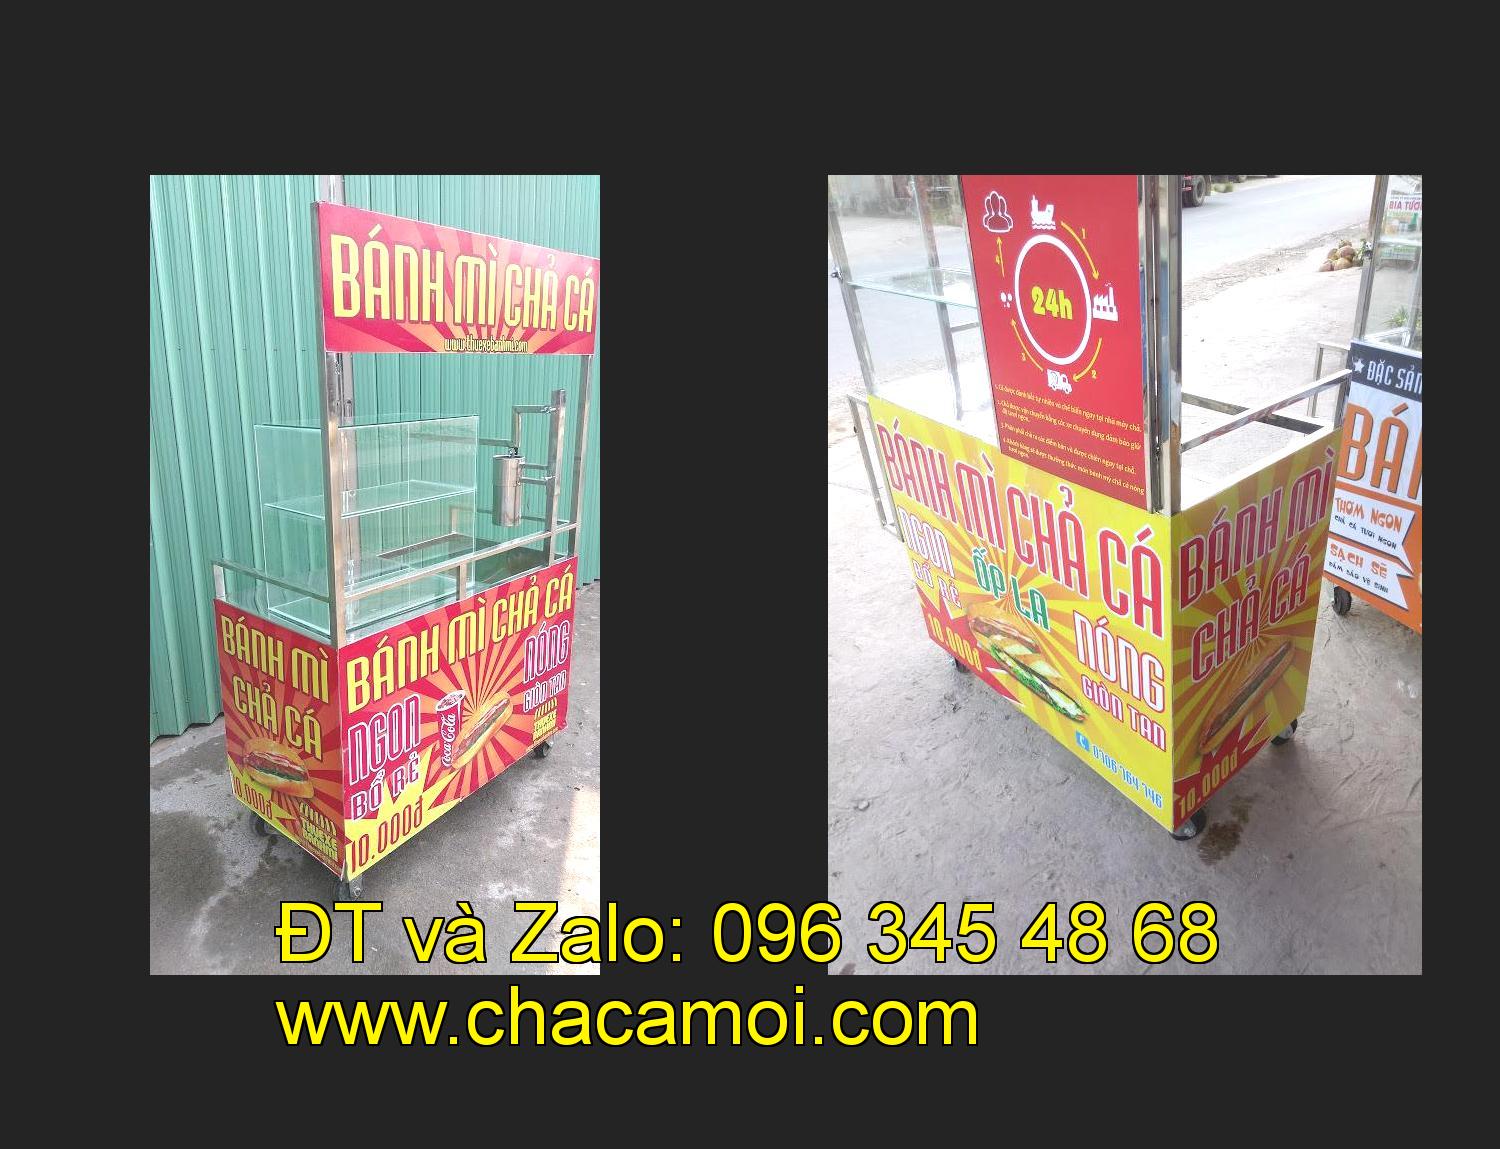 Bán xe bánh mì chả cá tại tỉnh Hà Nội